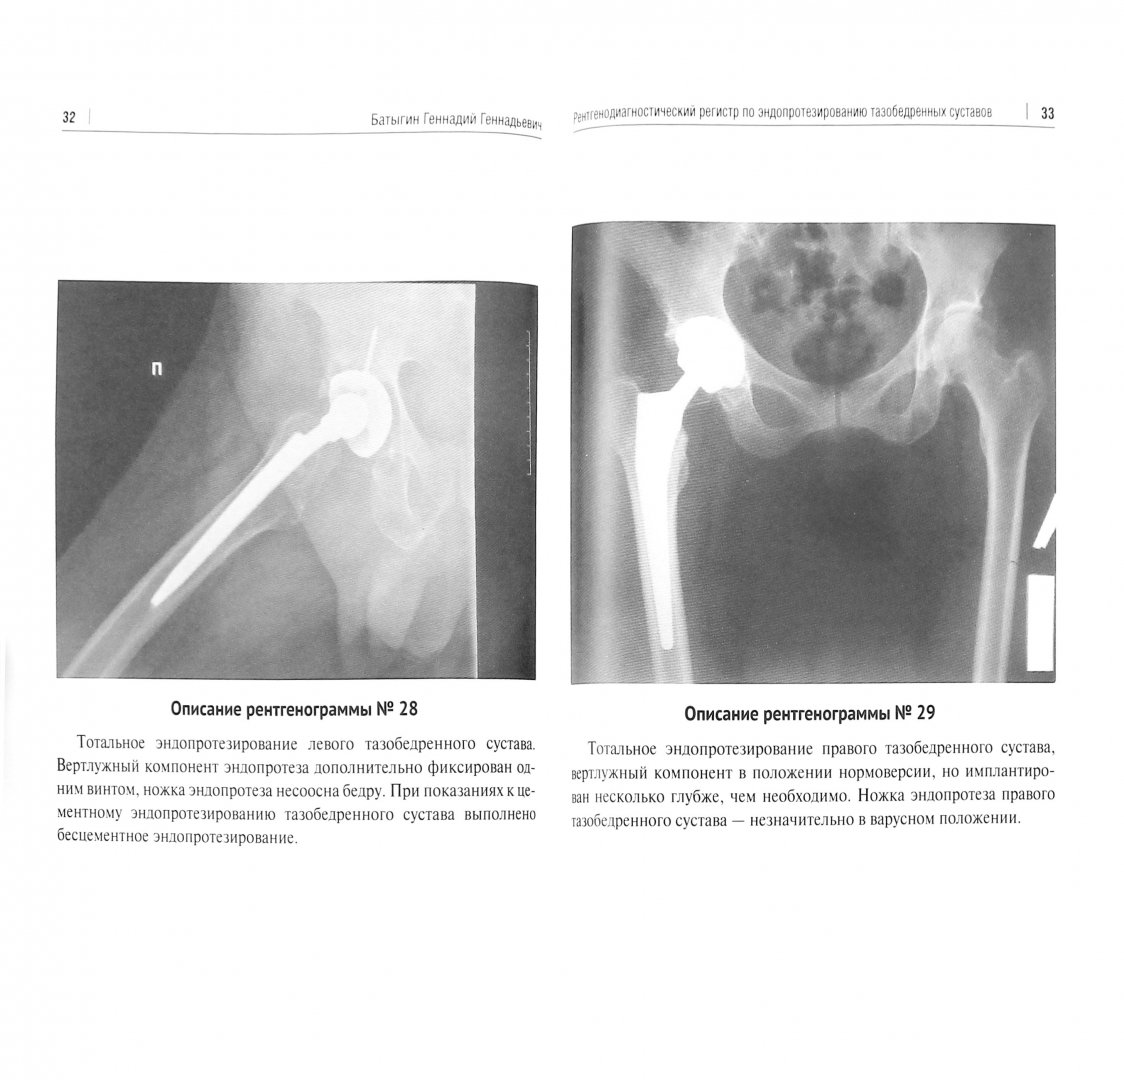 Иллюстрация 1 из 7 для Рентгенологический регистр по эндопротезированию тазобедренных суставов - Геннадий Батыгин | Лабиринт - книги. Источник: Лабиринт